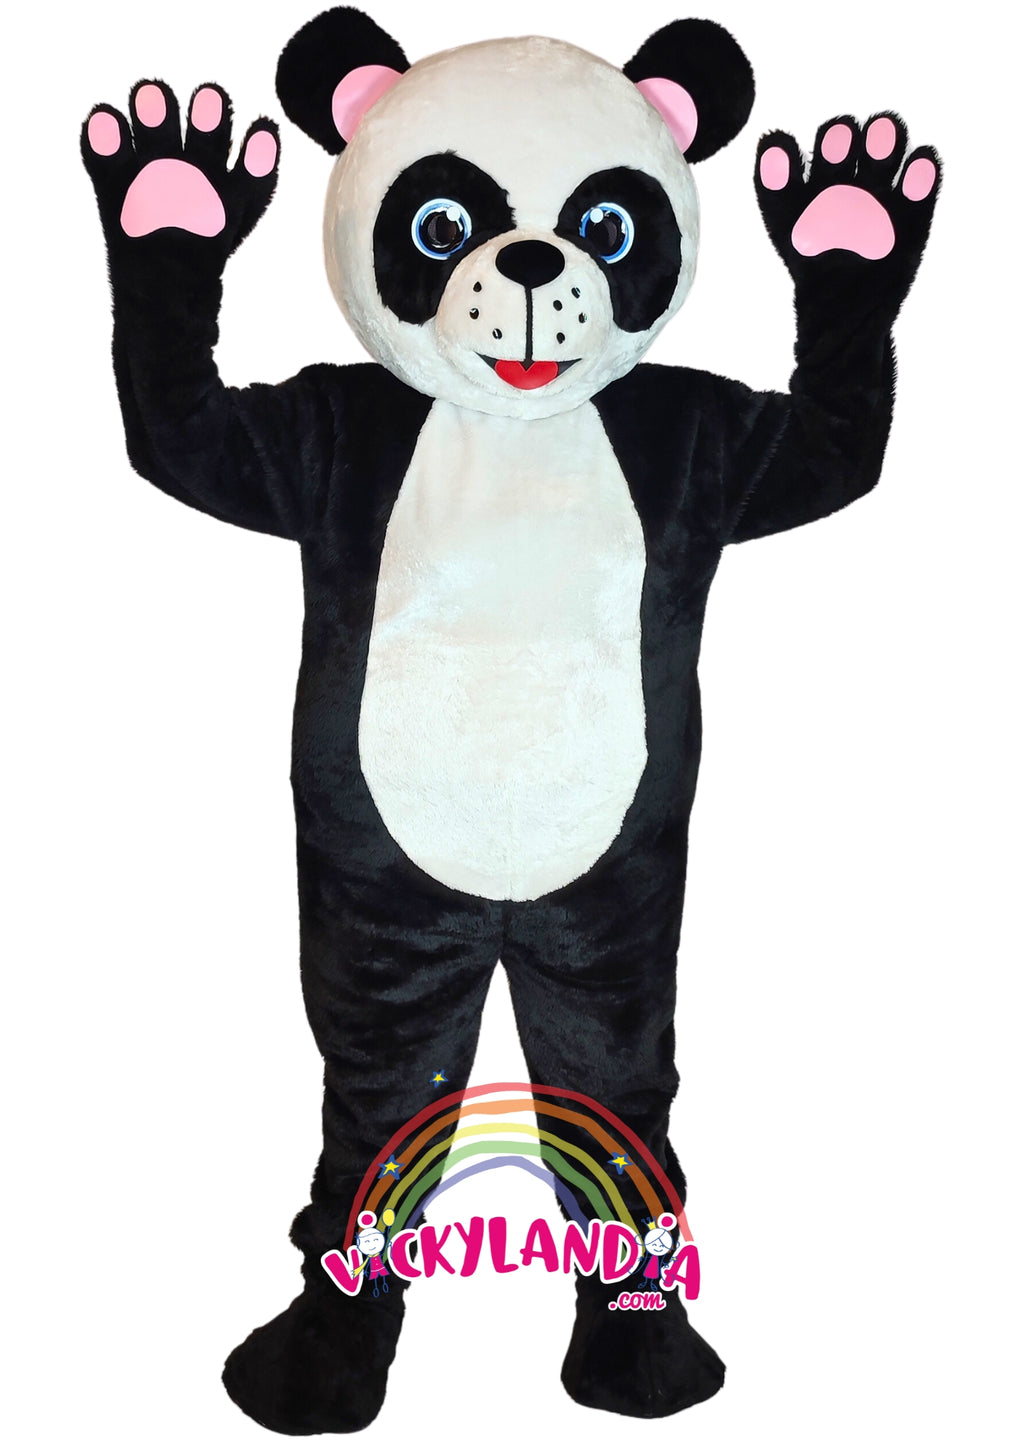 Descubre la magia de nuestro muñeco publicitario de Oso Panda en Vickylandia. Son disfraces cabezones perfectos para fiestas infantiles, shows, cumpleaños, estrategias publicitarias, espectáculos, cabalgatas y cualquier tipo de evento.